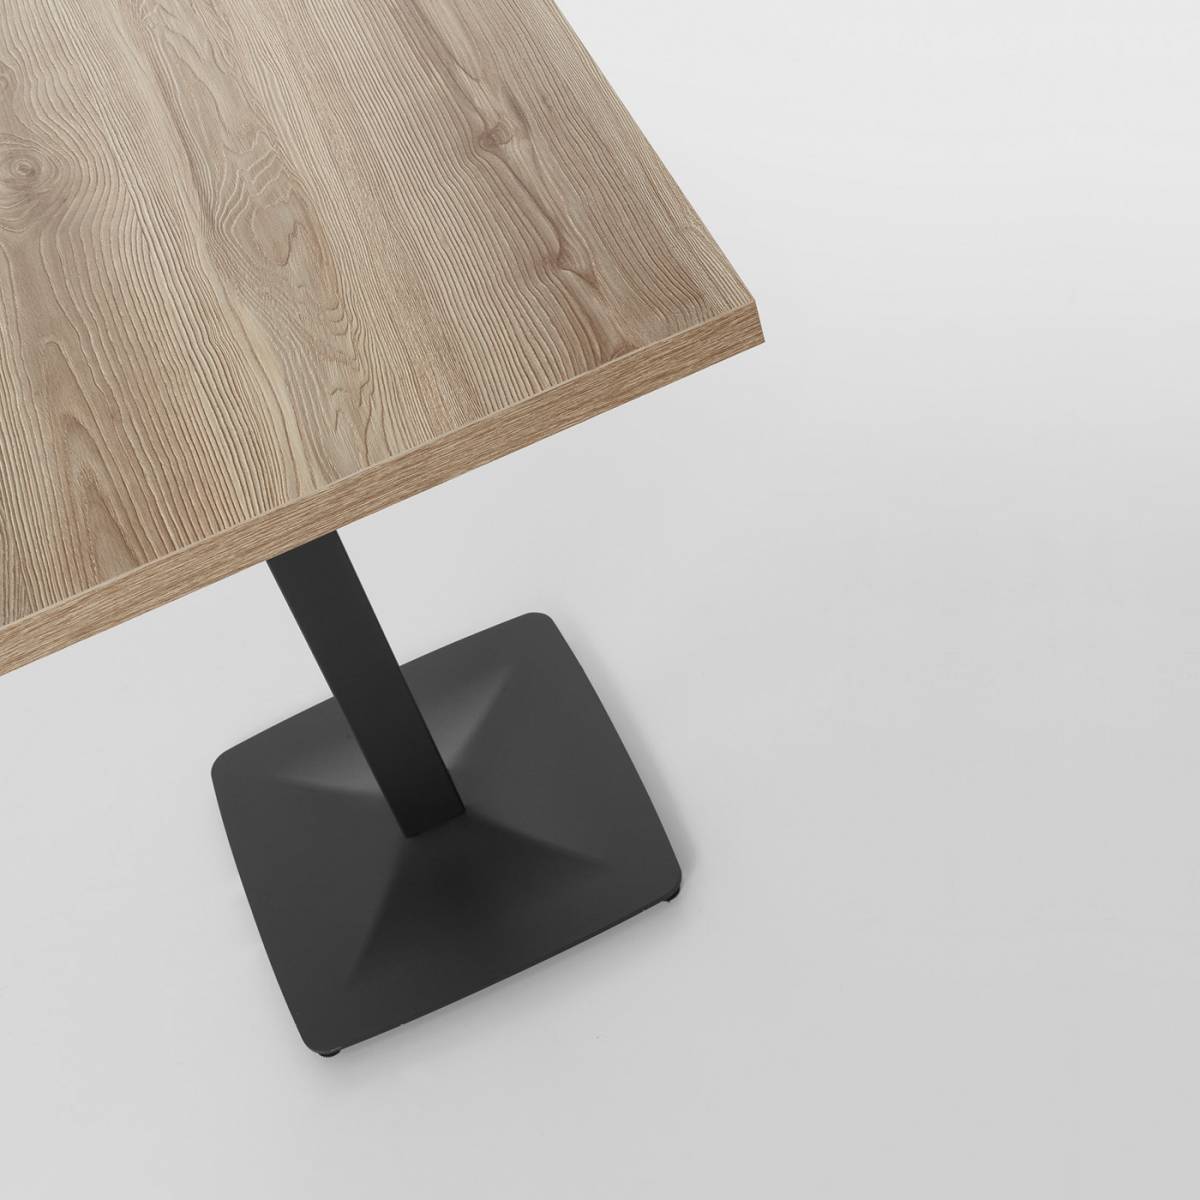 Pied de table moderne pour CHR- MobiKent Design